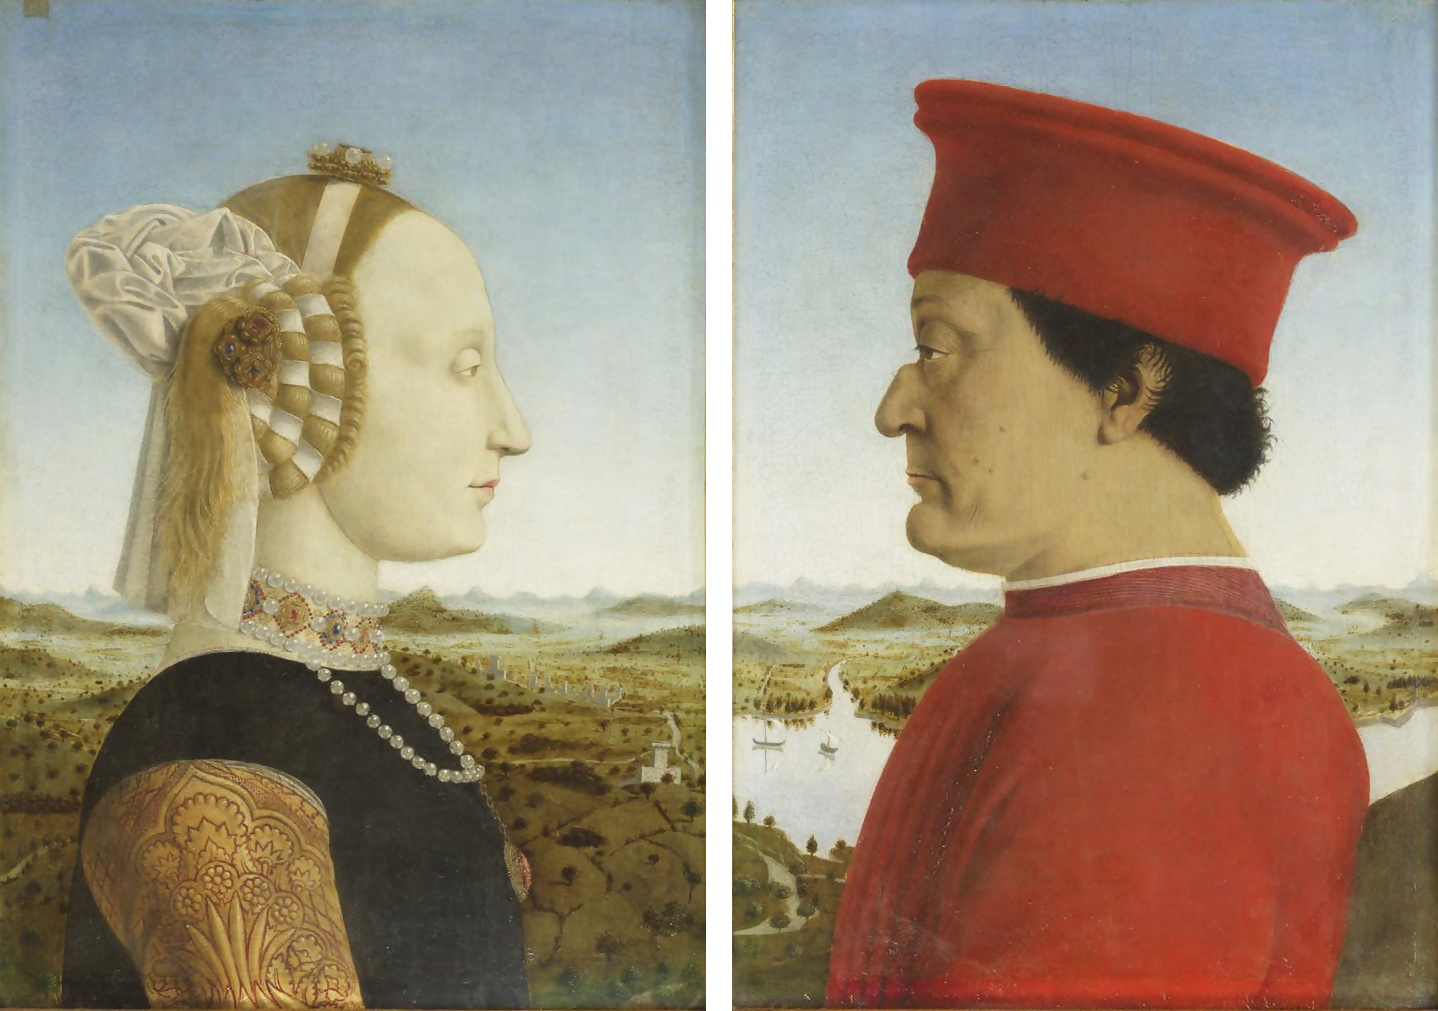 Piero della Francesca’s 15th century diptych, The Duke and Duchess of Urbino